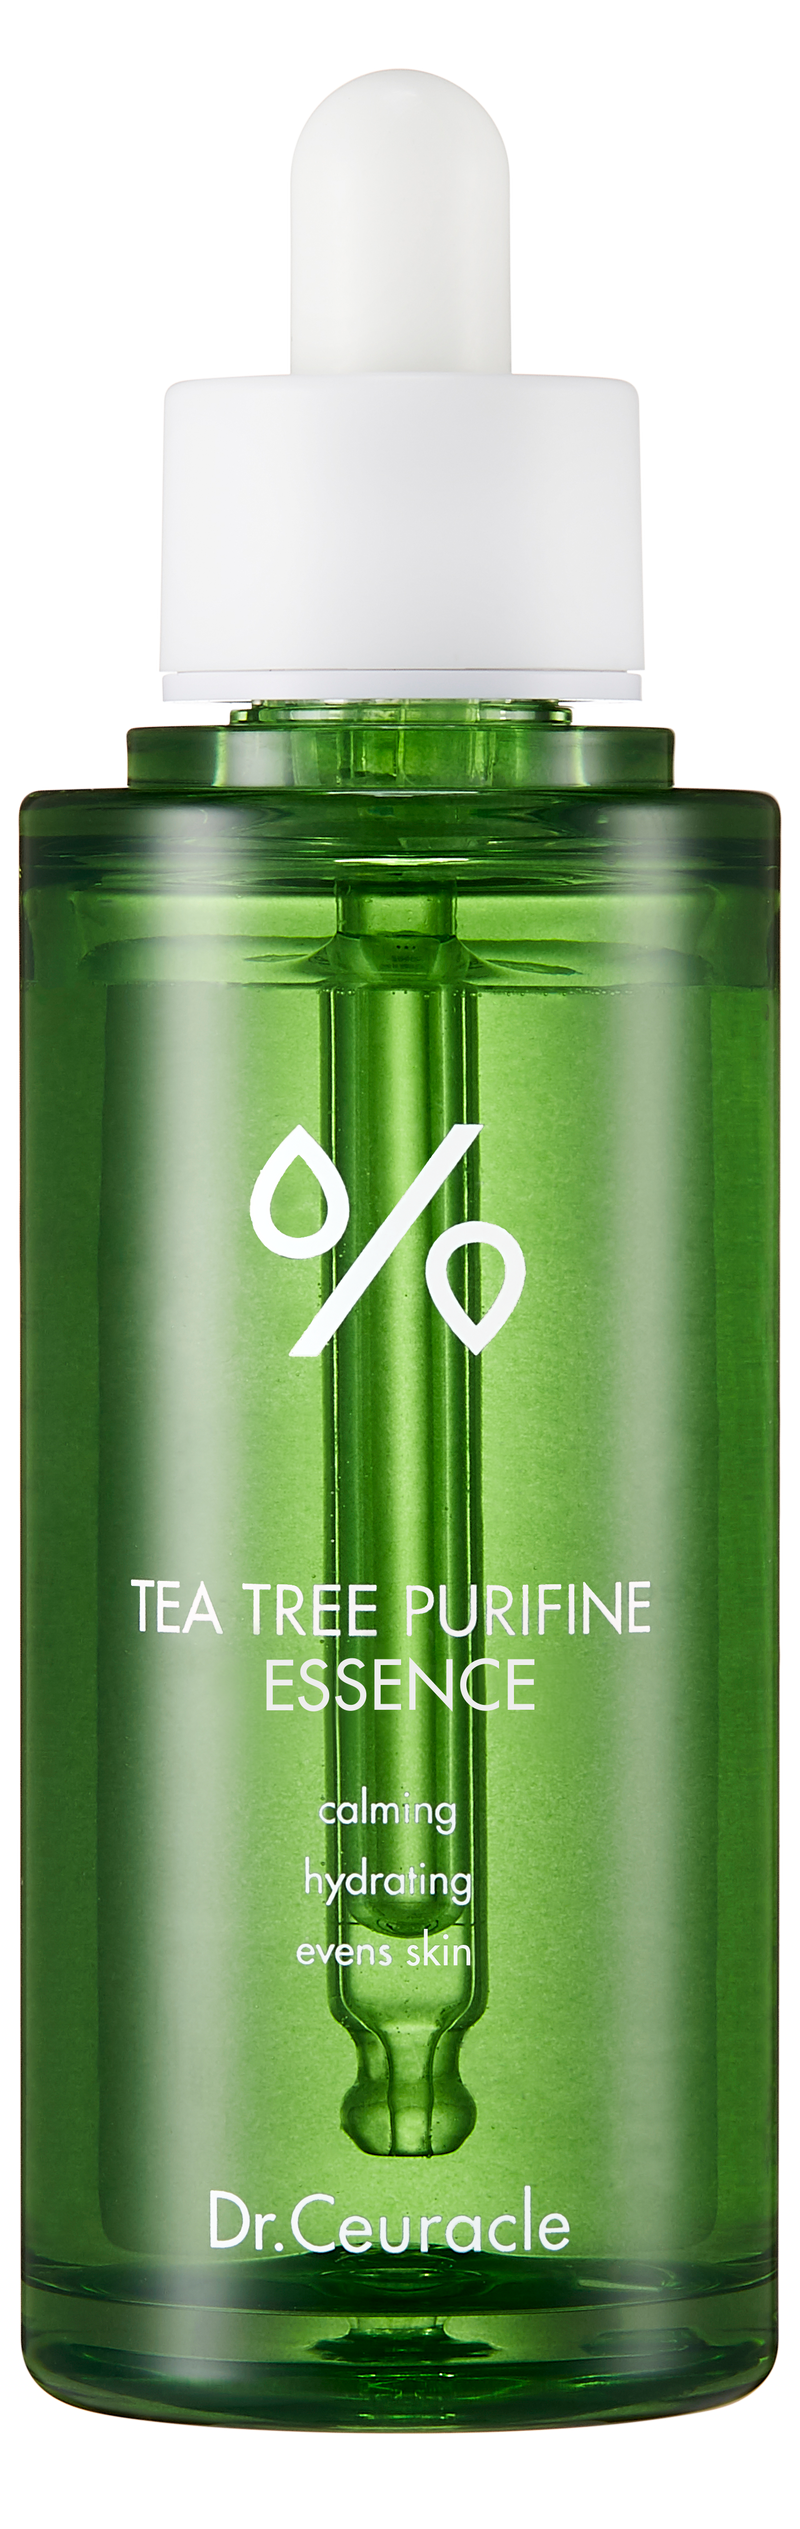 Tea Tree Purifine 95 Essence